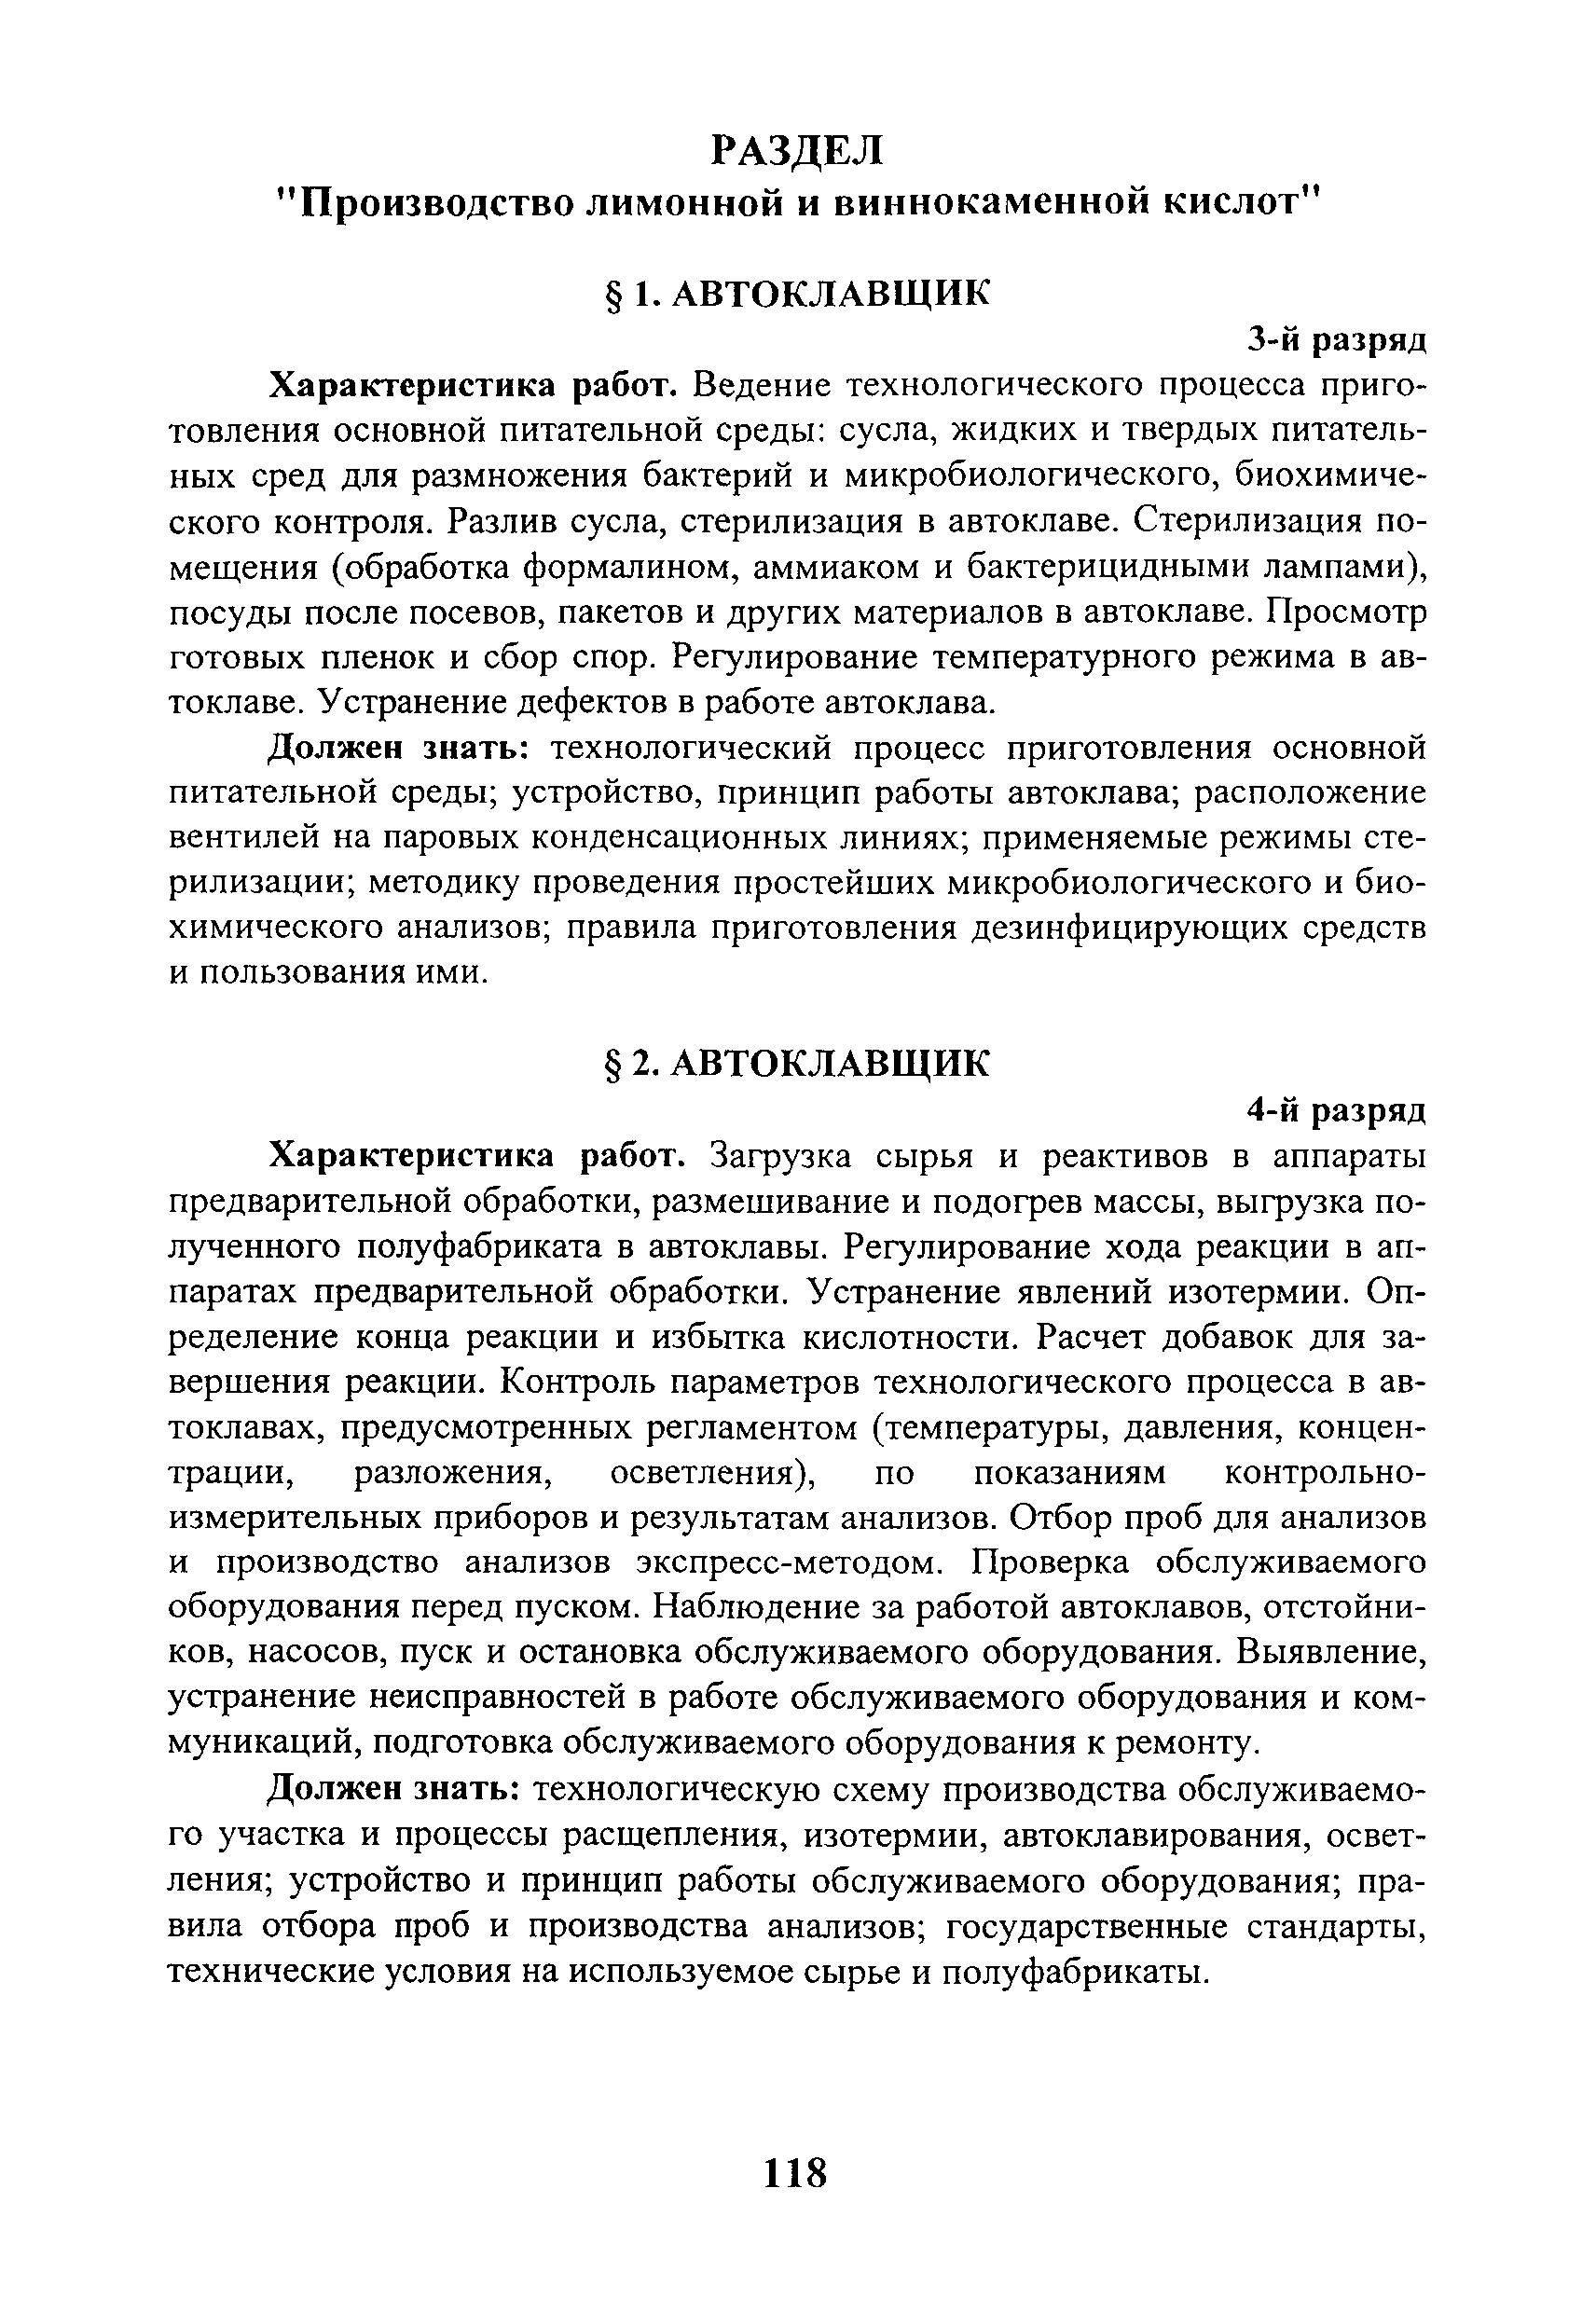 ЕТКС Выпуск 29